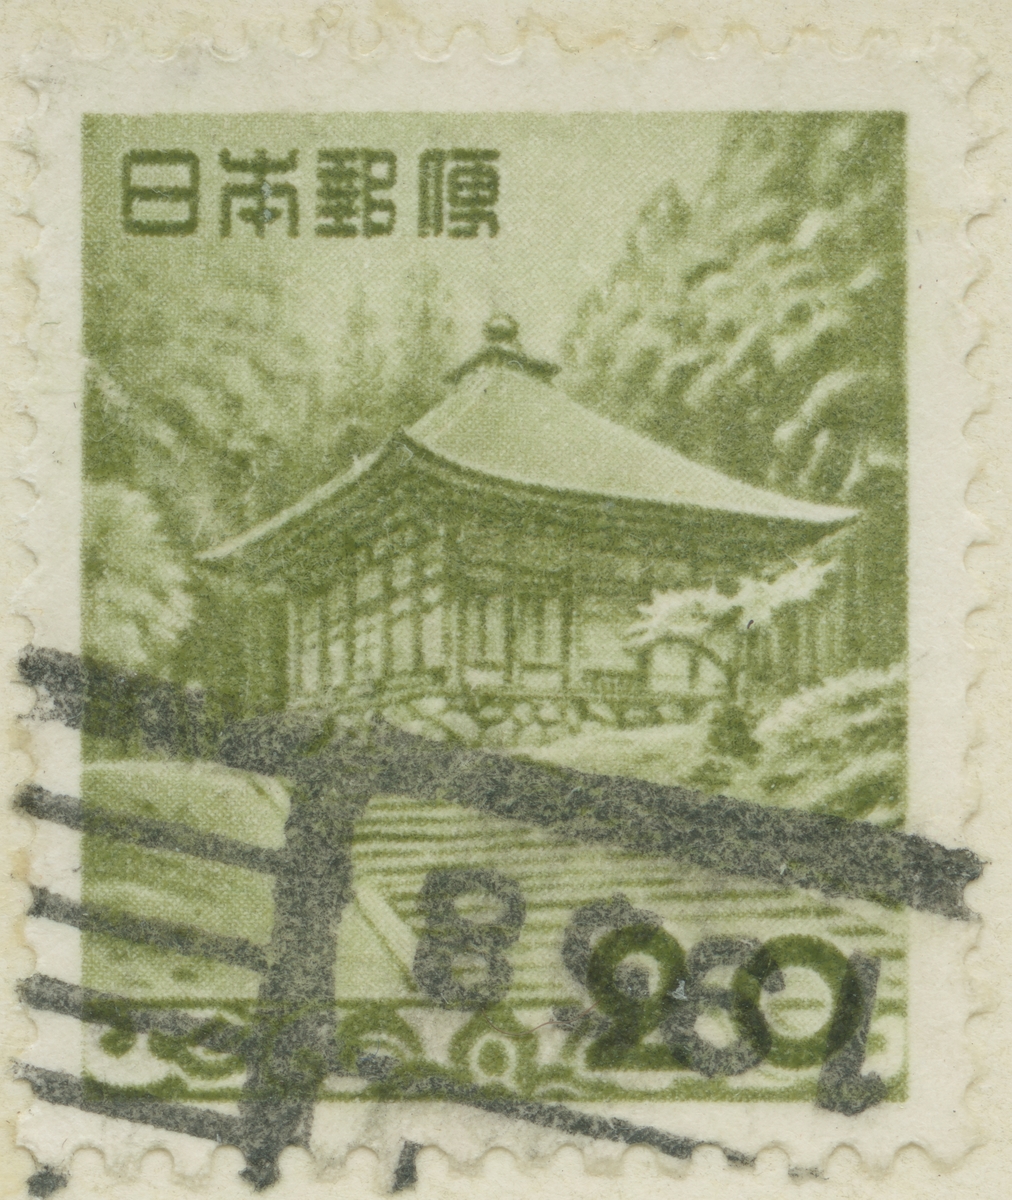 Frimärke ur Gösta Bodmans filatelistiska motivsamling, påbörjad 1950.
Frimärke från Japan, 1953. Motiv av Guldtemplet Chūson-ji vid Hiraizumi.